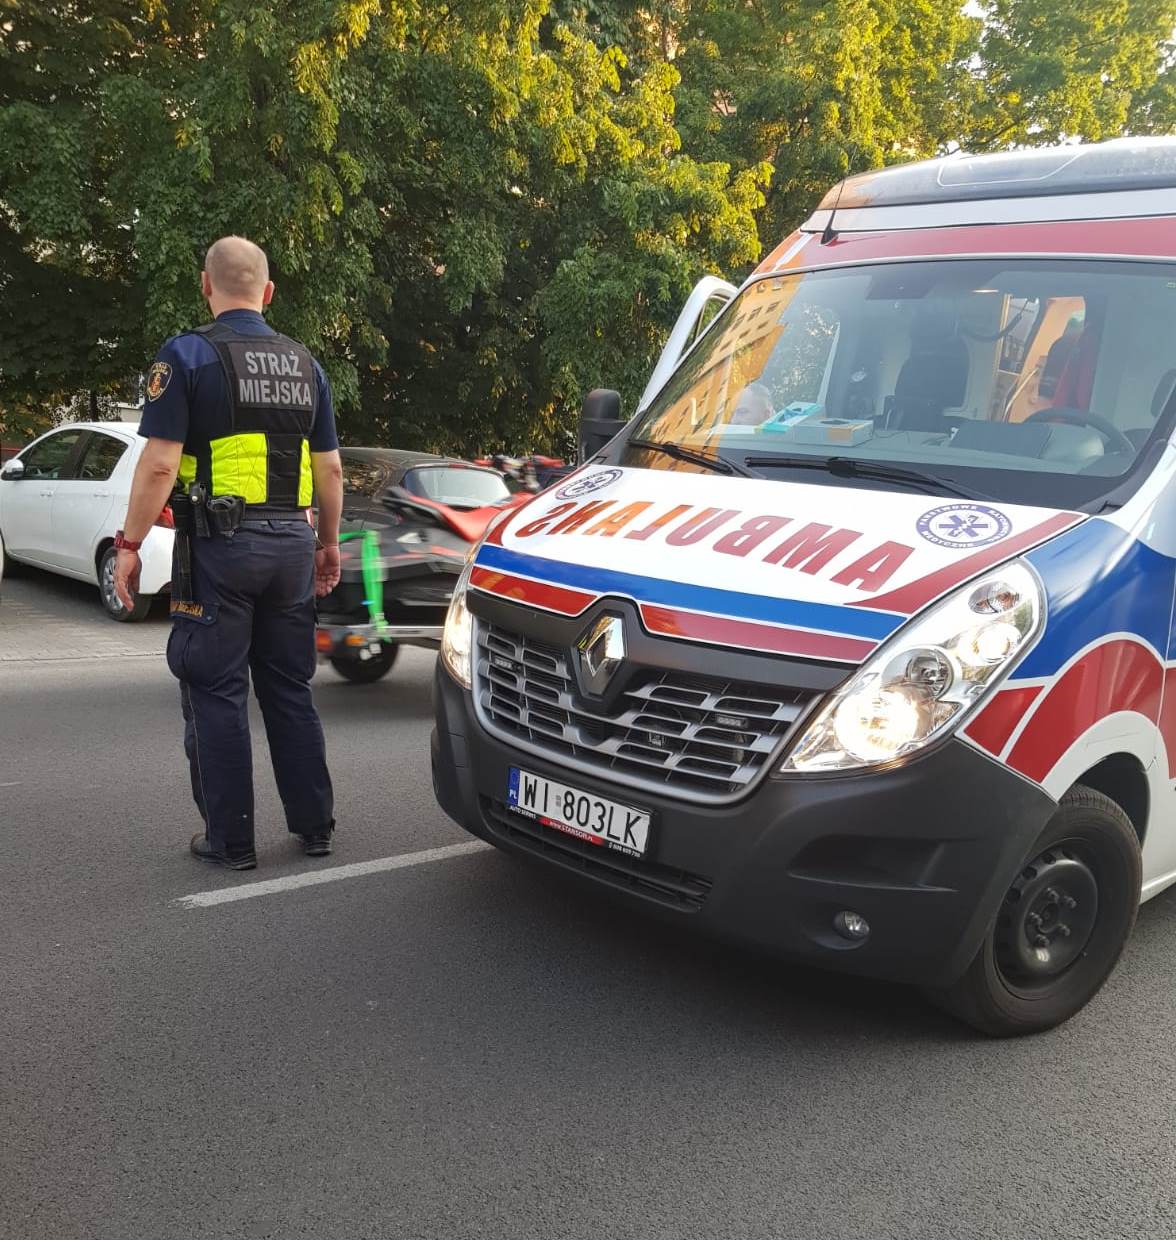 Strażnik miejski, stojąc na jezdni obok ambulansu, zabezpiecza miejsce pracy zespołu ratowniczego.